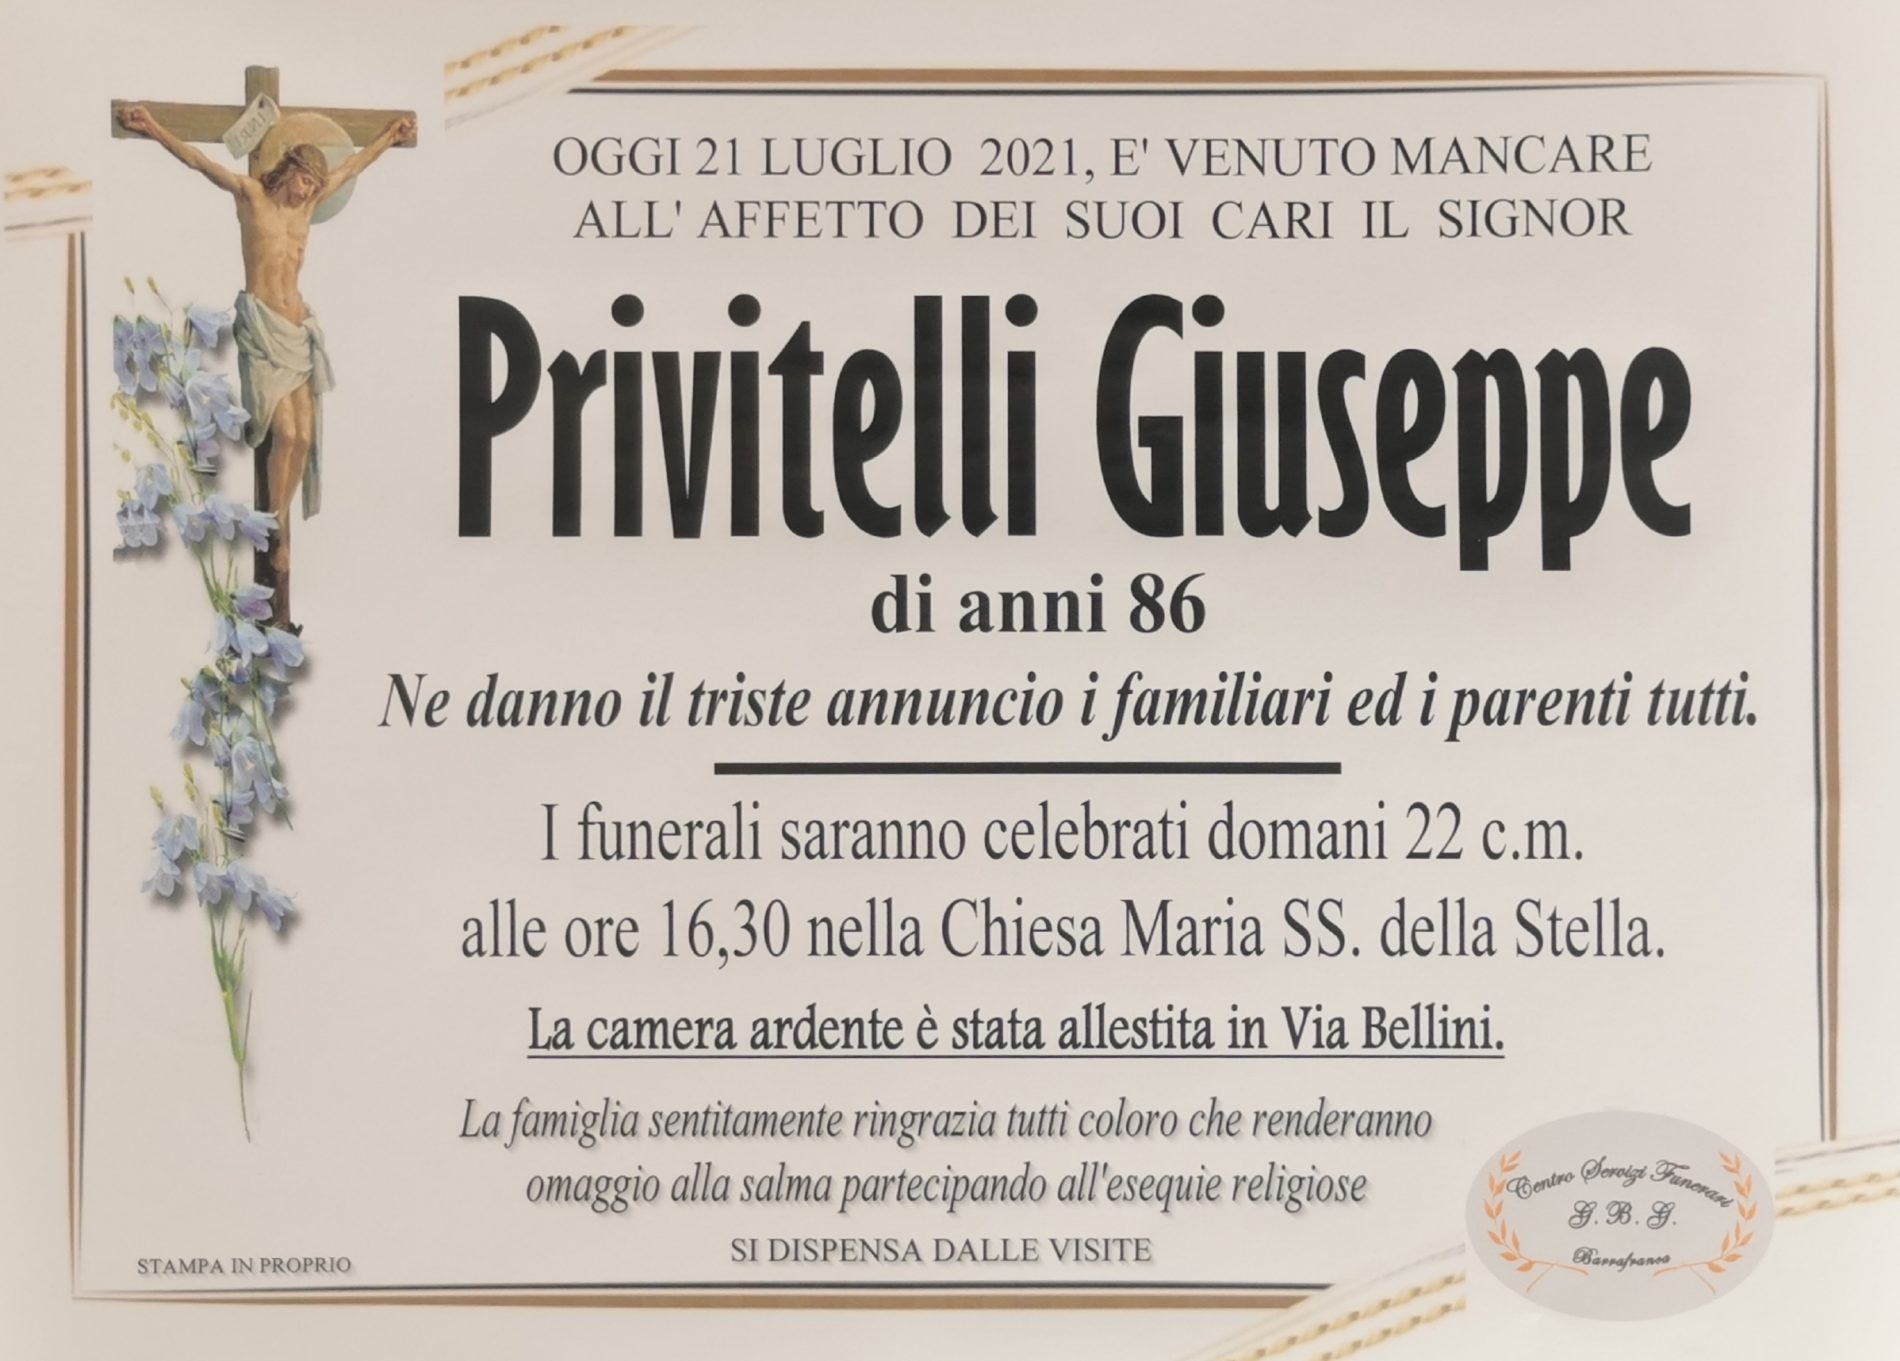 Annuncio servizi funerari Agenzia G.B.G. sig. Privitelli Giuseppe di anni 86